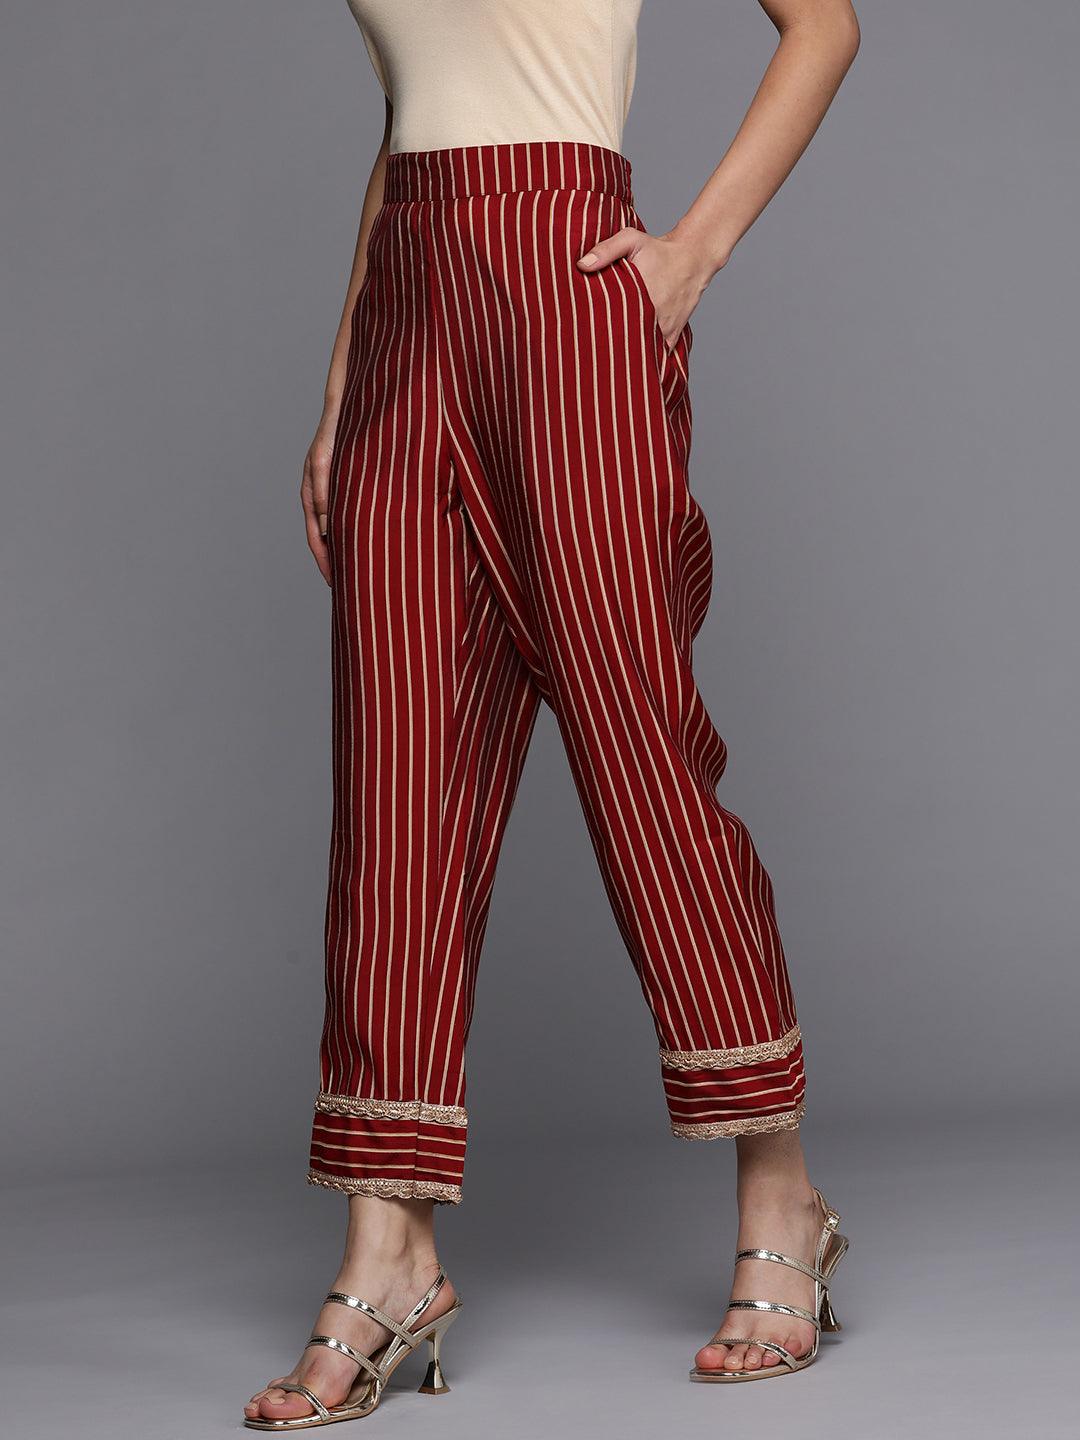 Maroon Printed Silk Trousers - Libas